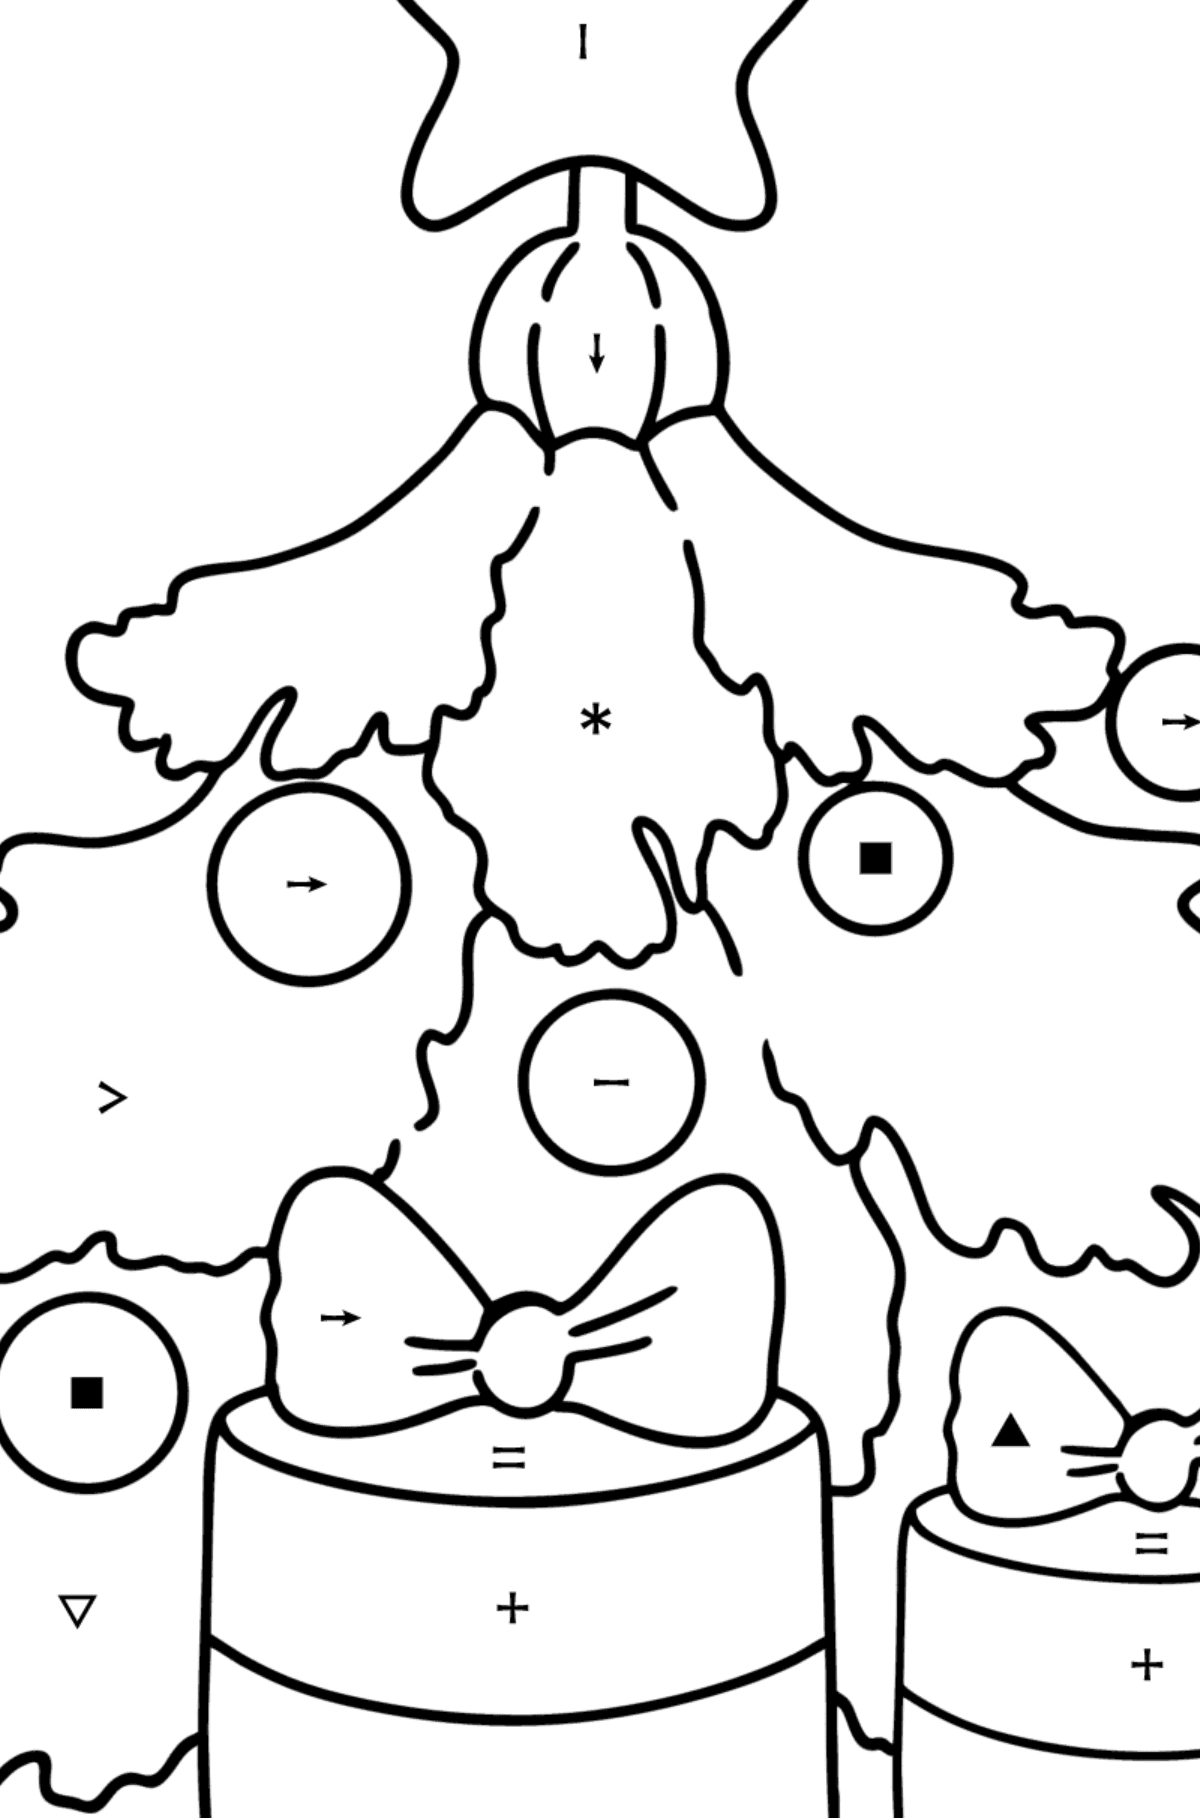 Kleurplaat Kerstboom en cadeaus - Kleuren met symbolen voor kinderen